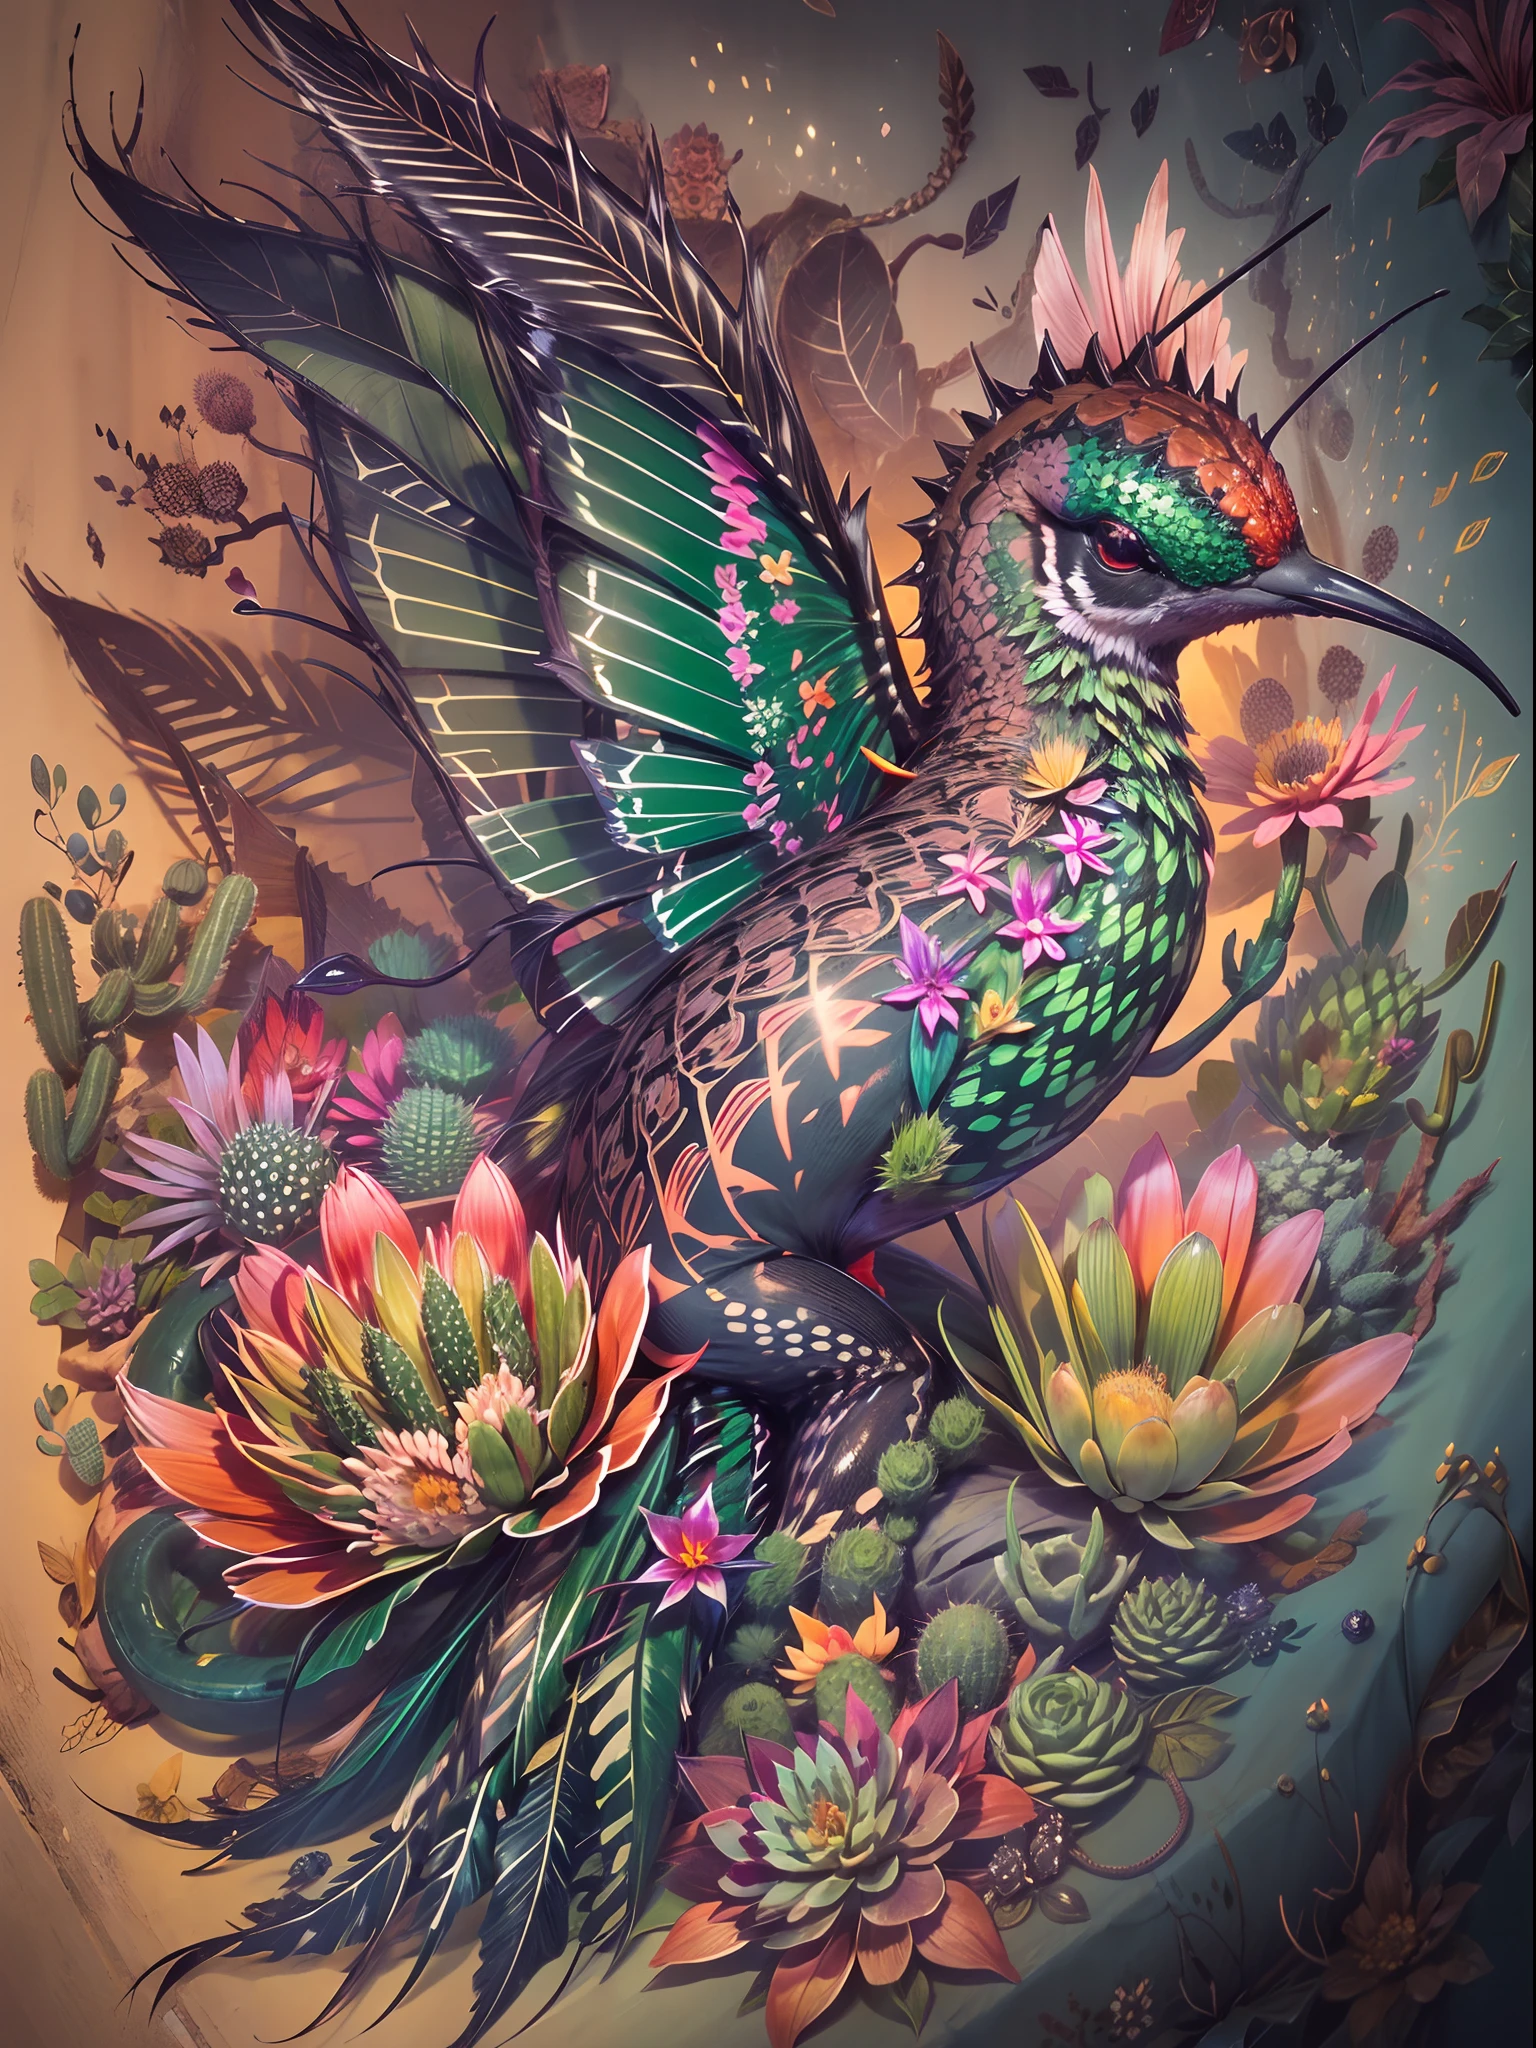 In diesem Tattoo-Design, Erschaffe eine surreale Kreatur, die die Merkmale eines Kolibris vereint, eine Schlange, und ein Kaktus, mit aufwendigen Details wie schillernden Federn, leuchtend grüne Schuppen mit Stacheln, und zarte Blütenblüten wachsen aus dem stacheligen Körper des Wesens, vor einem dunklen und stimmungsvollen Hintergrund mit einem Hauch von Sonnenuntergangsfarben, um ein faszinierendes und unvergessliches Bild zu schaffen.